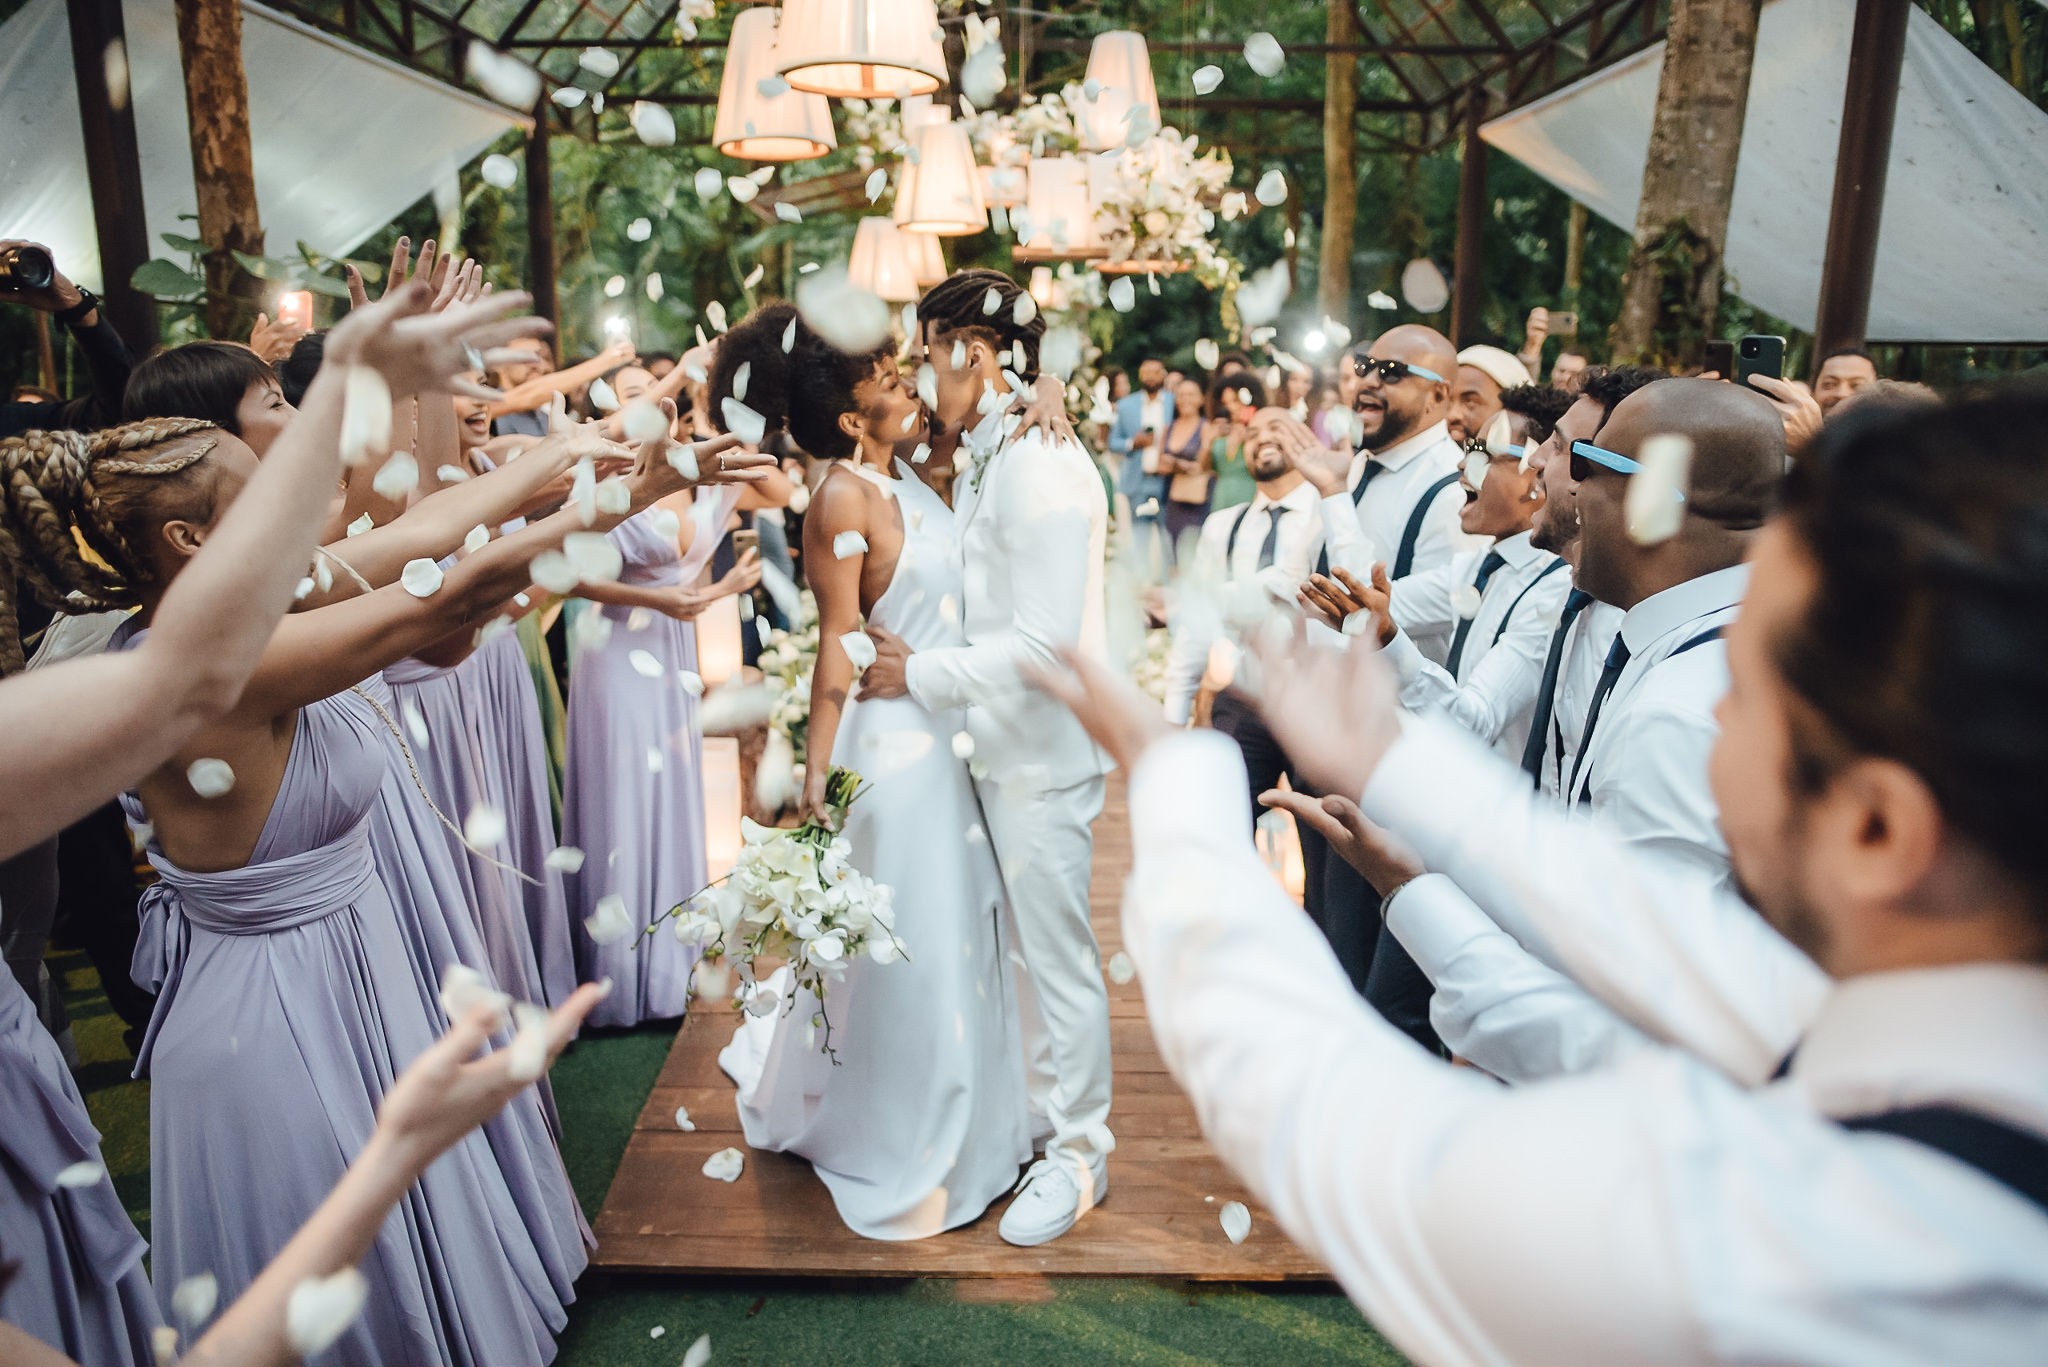 O casamento de Ivi Pizzott e Luis Navarro (Foto: Divulgação / Vitor Barboni)